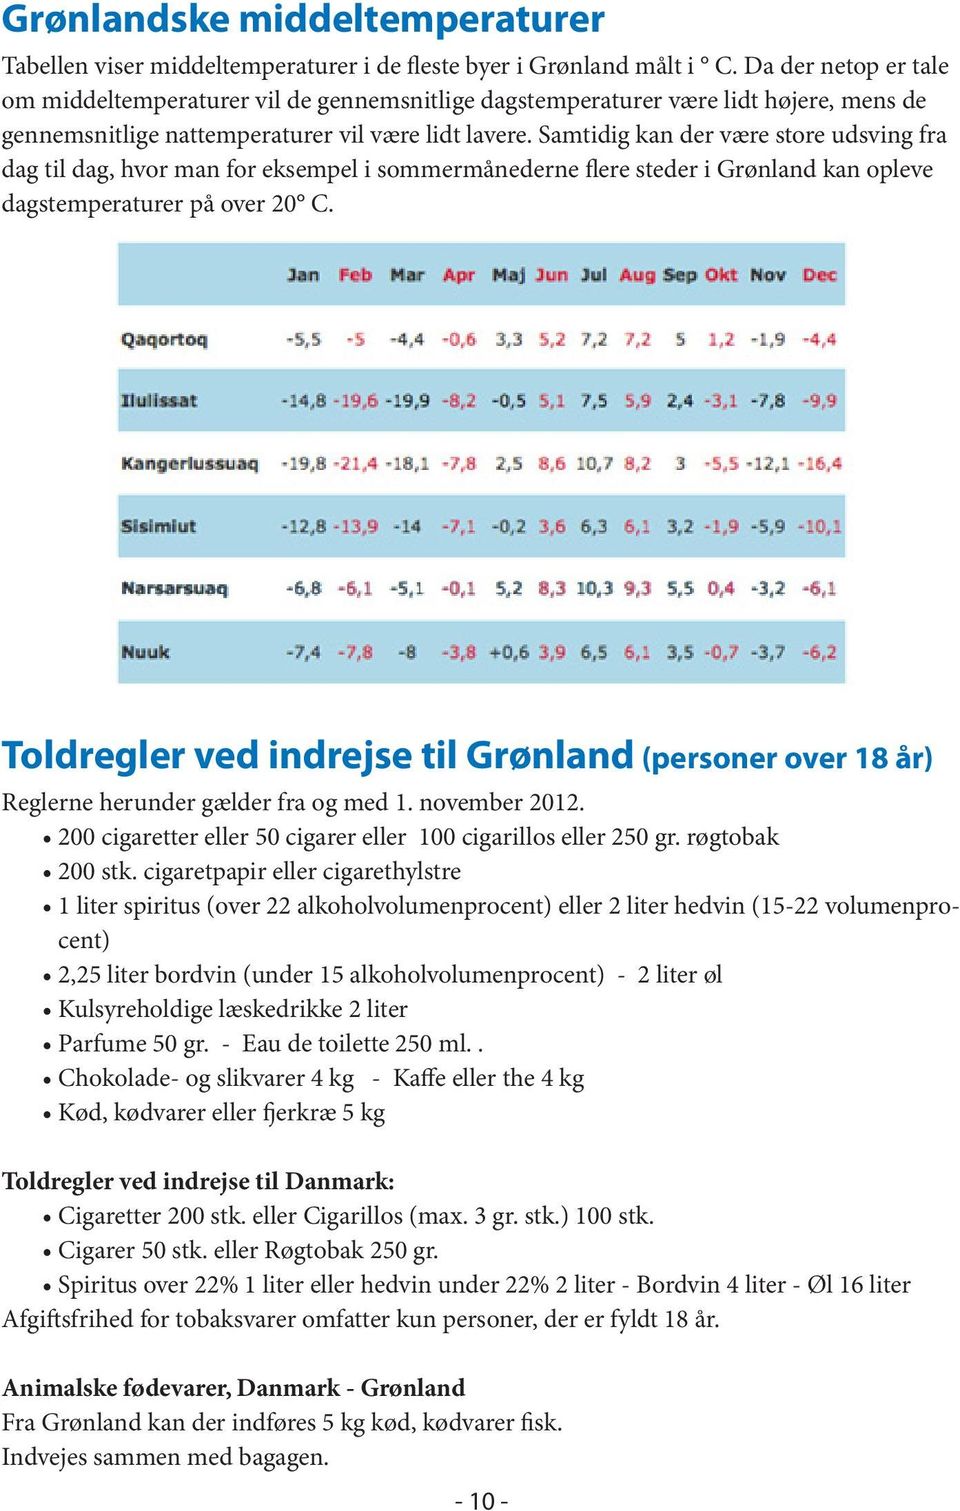 Samtidig kan der være store udsving fra dag til dag, hvor man for eksempel i sommermånederne flere steder i Grønland kan opleve dagstemperaturer på over 20 C.